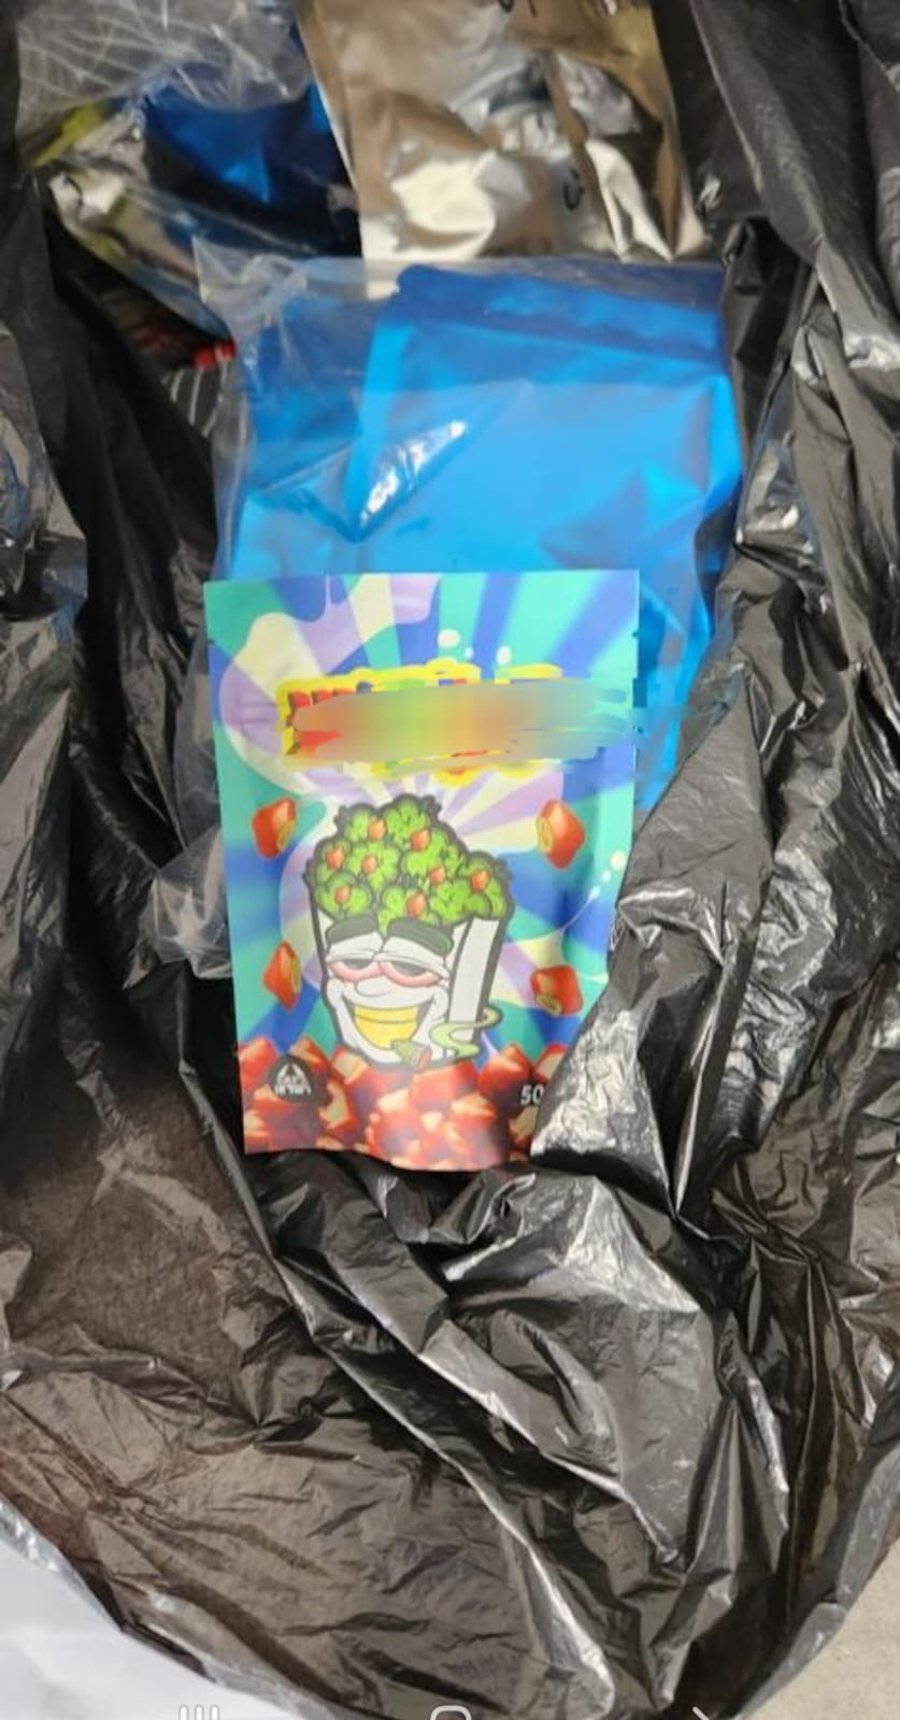 אמא לילדים קטנים נתפסה עם שקיות ממתקים מלאות סמים